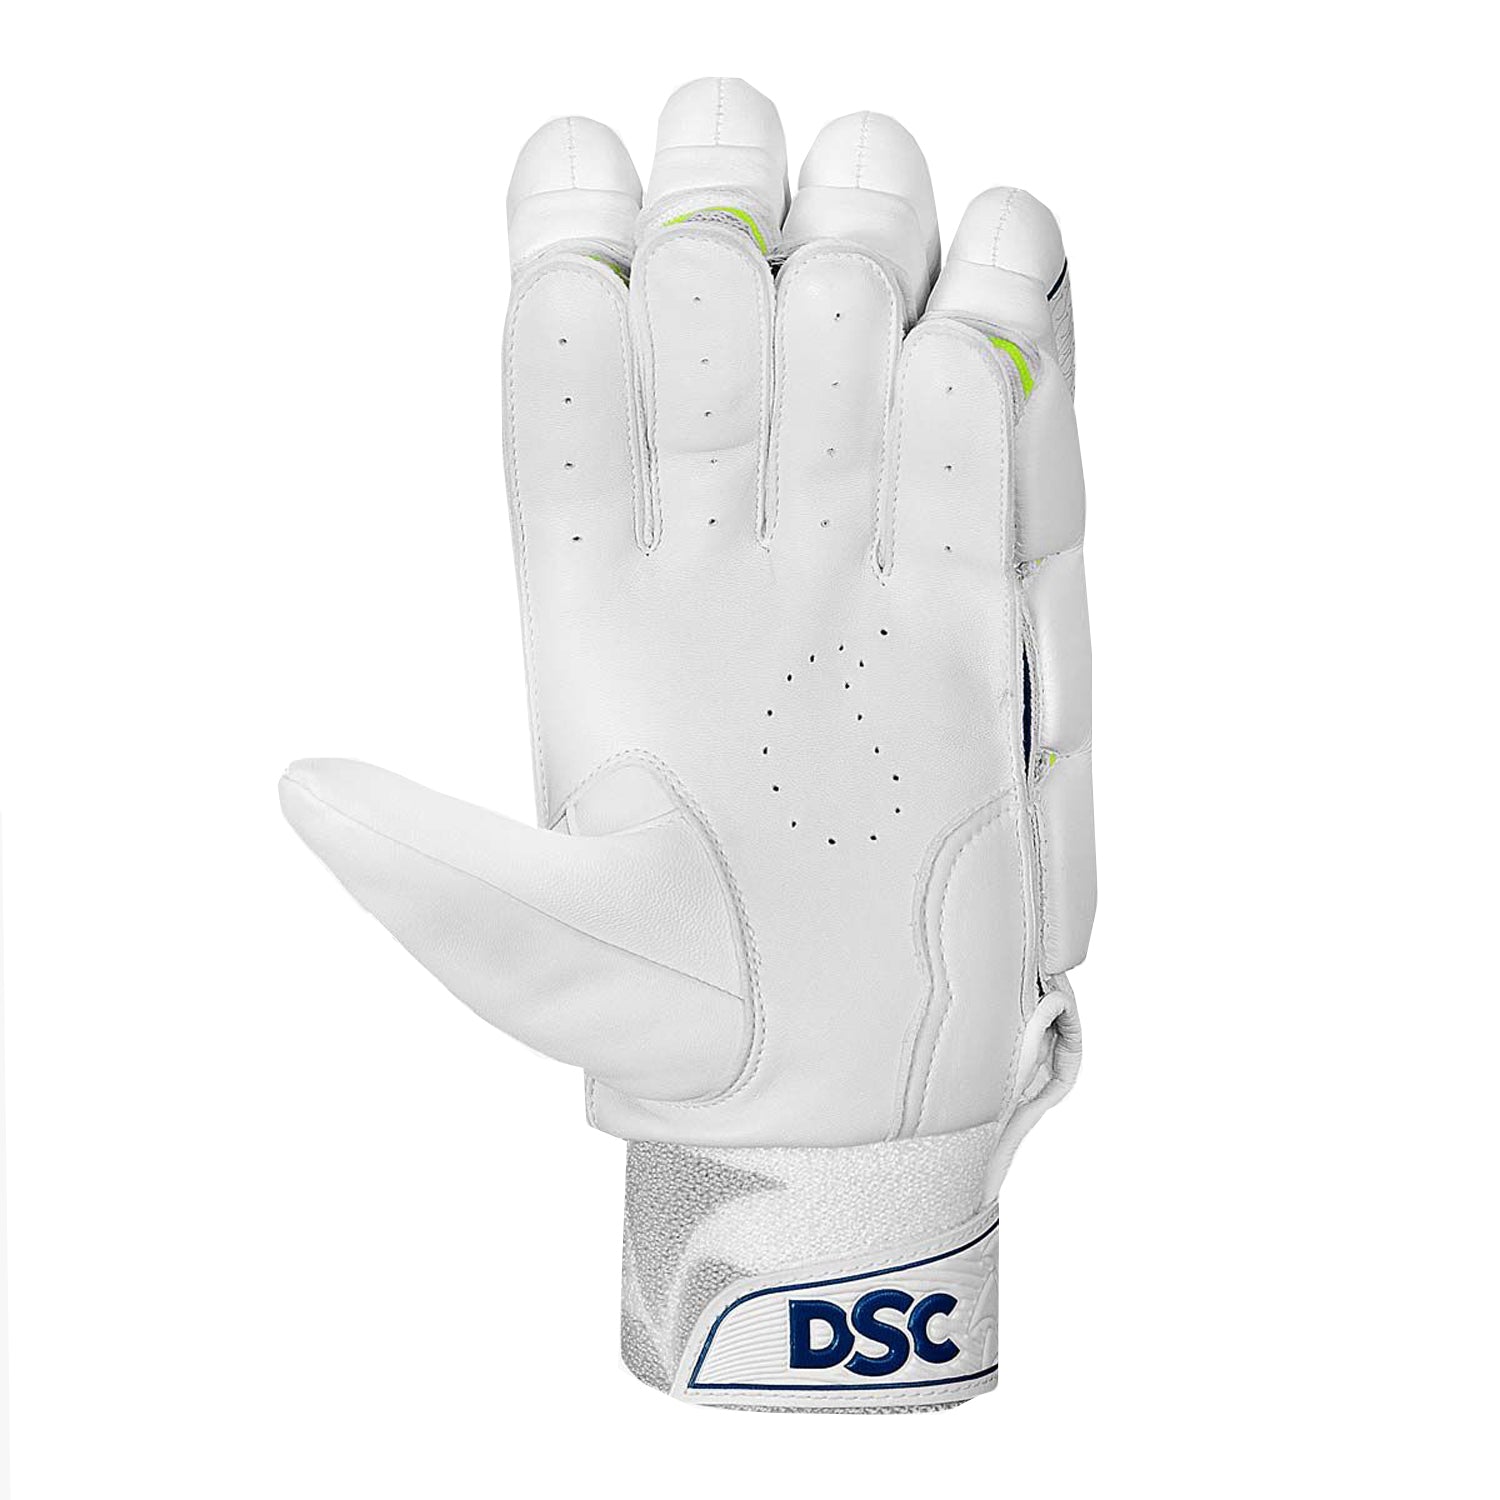 DSC Condor Flite RH Batting Gloves , White - Best Price online Prokicksports.com